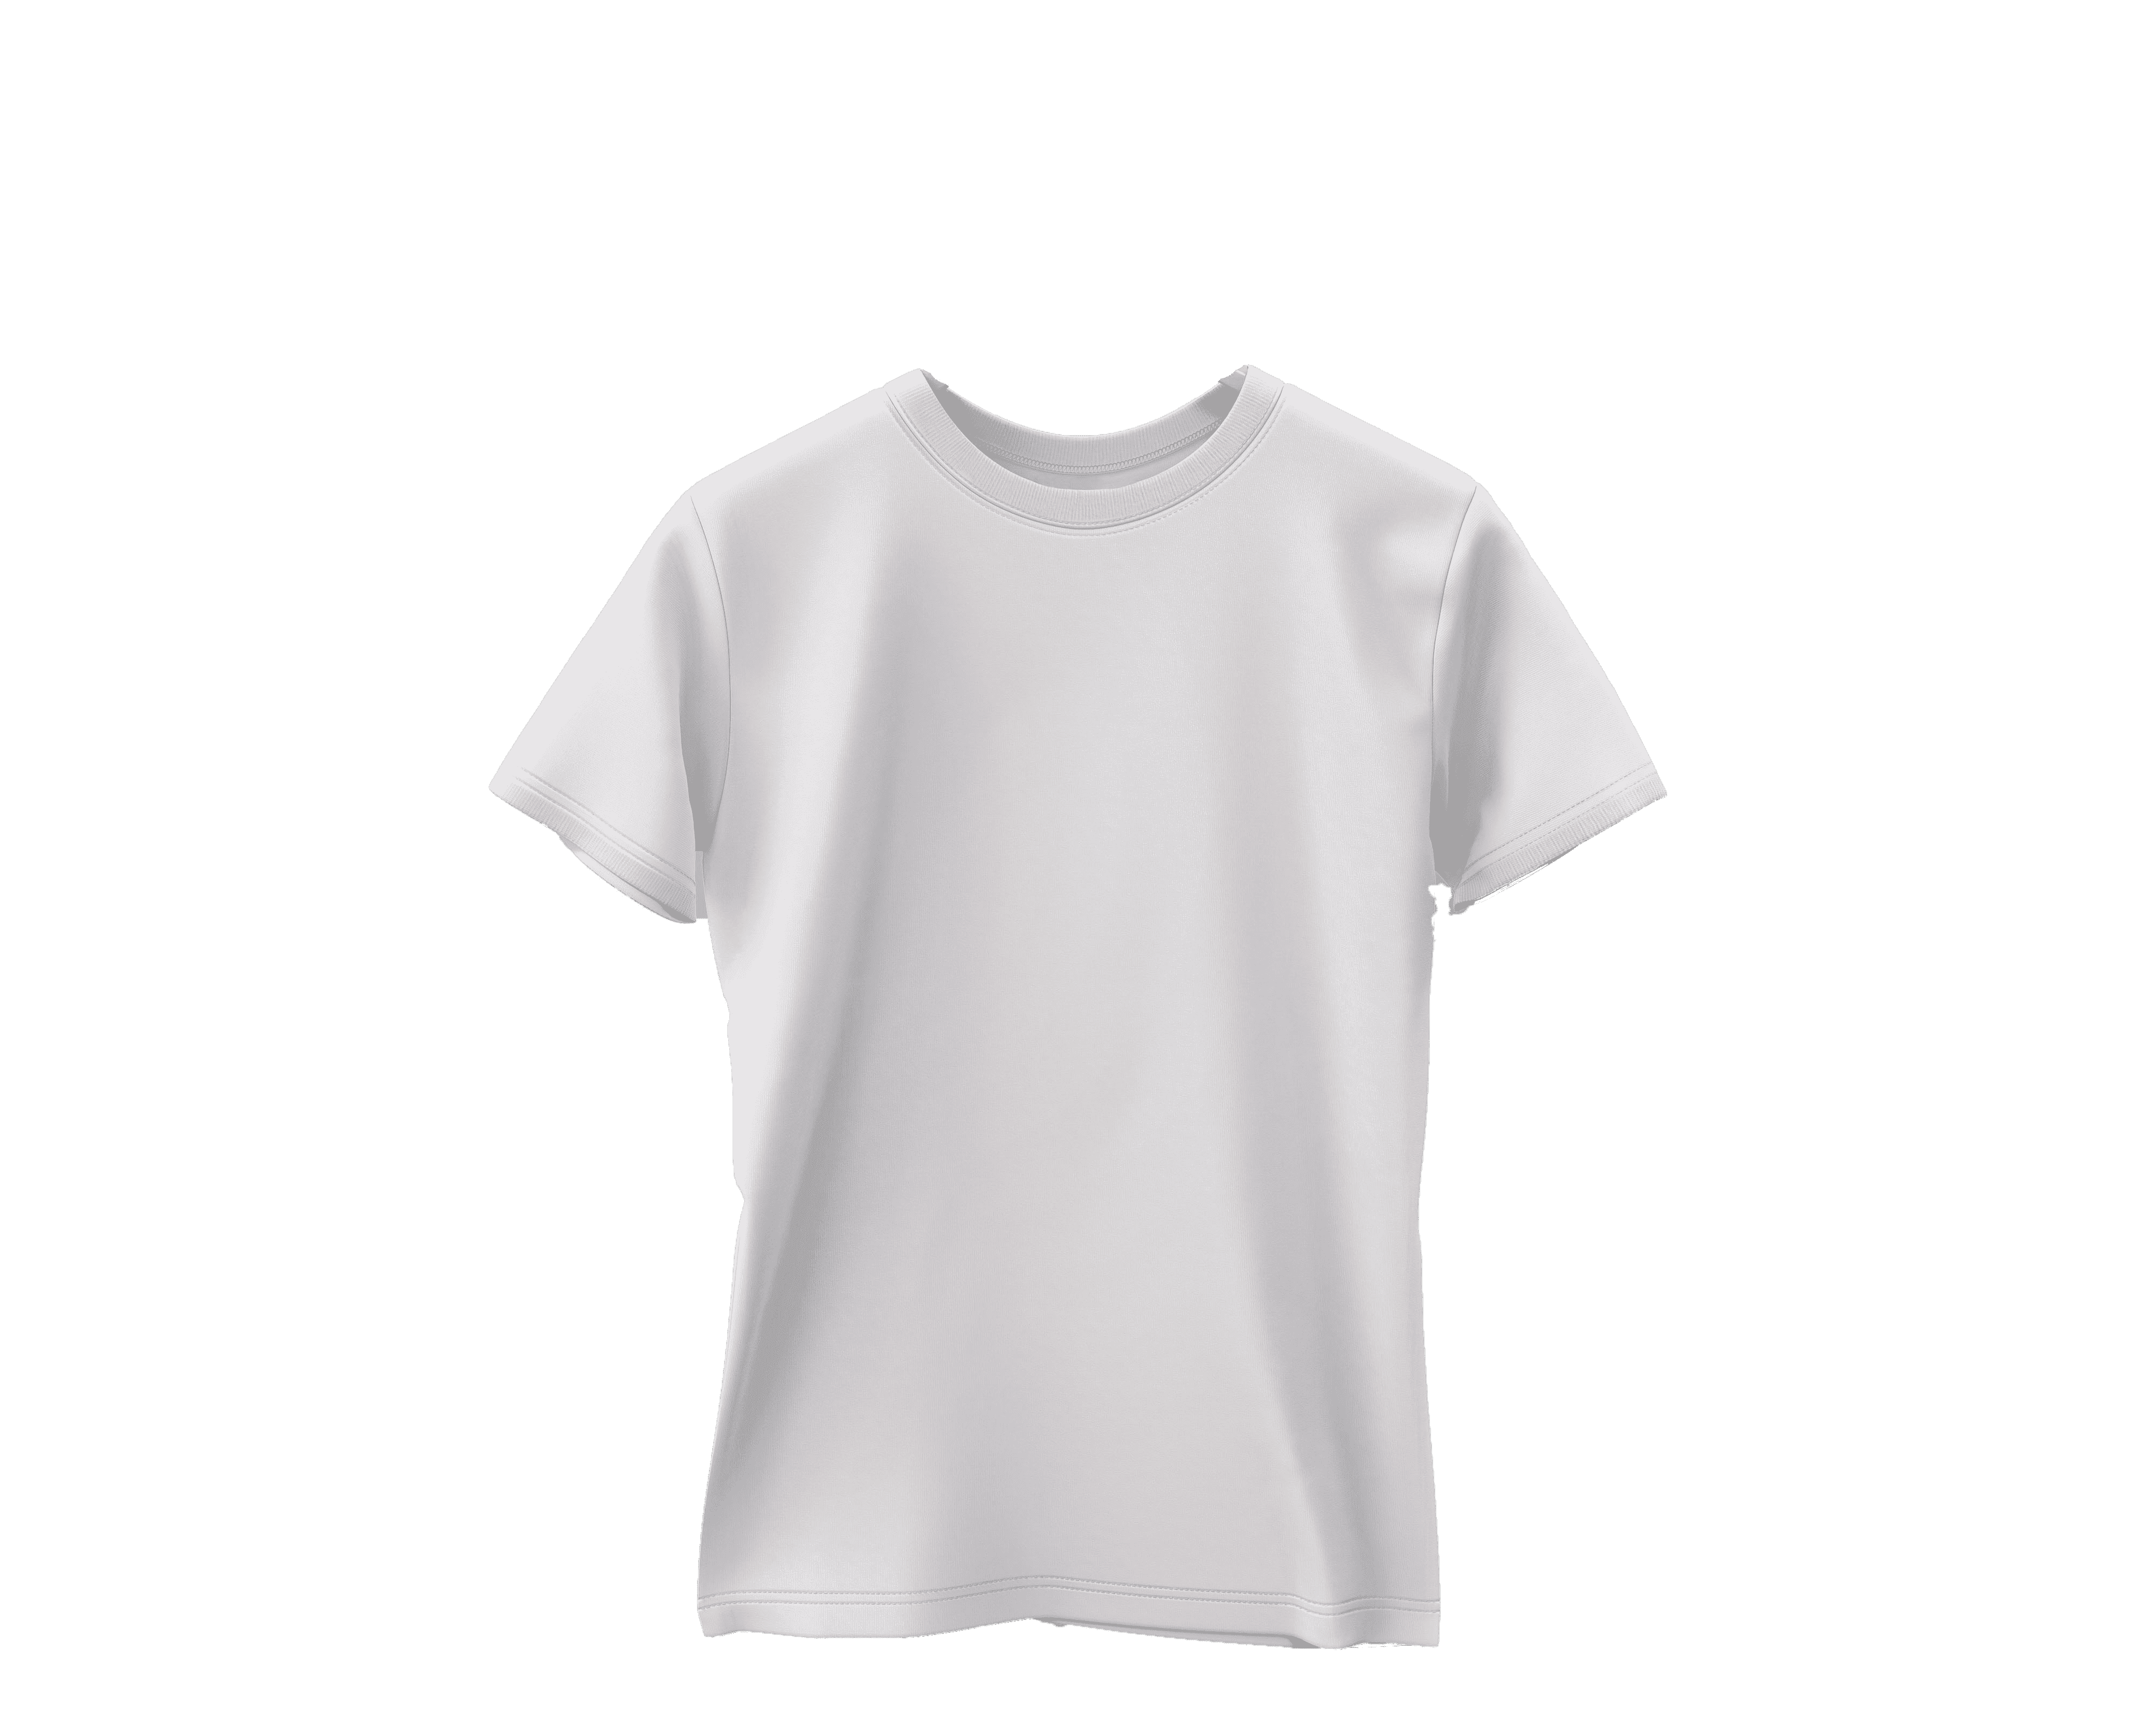 ROUND NECK & V-NECK T-SHIRTS - 100% Combed Cotton - Indigo Clothing